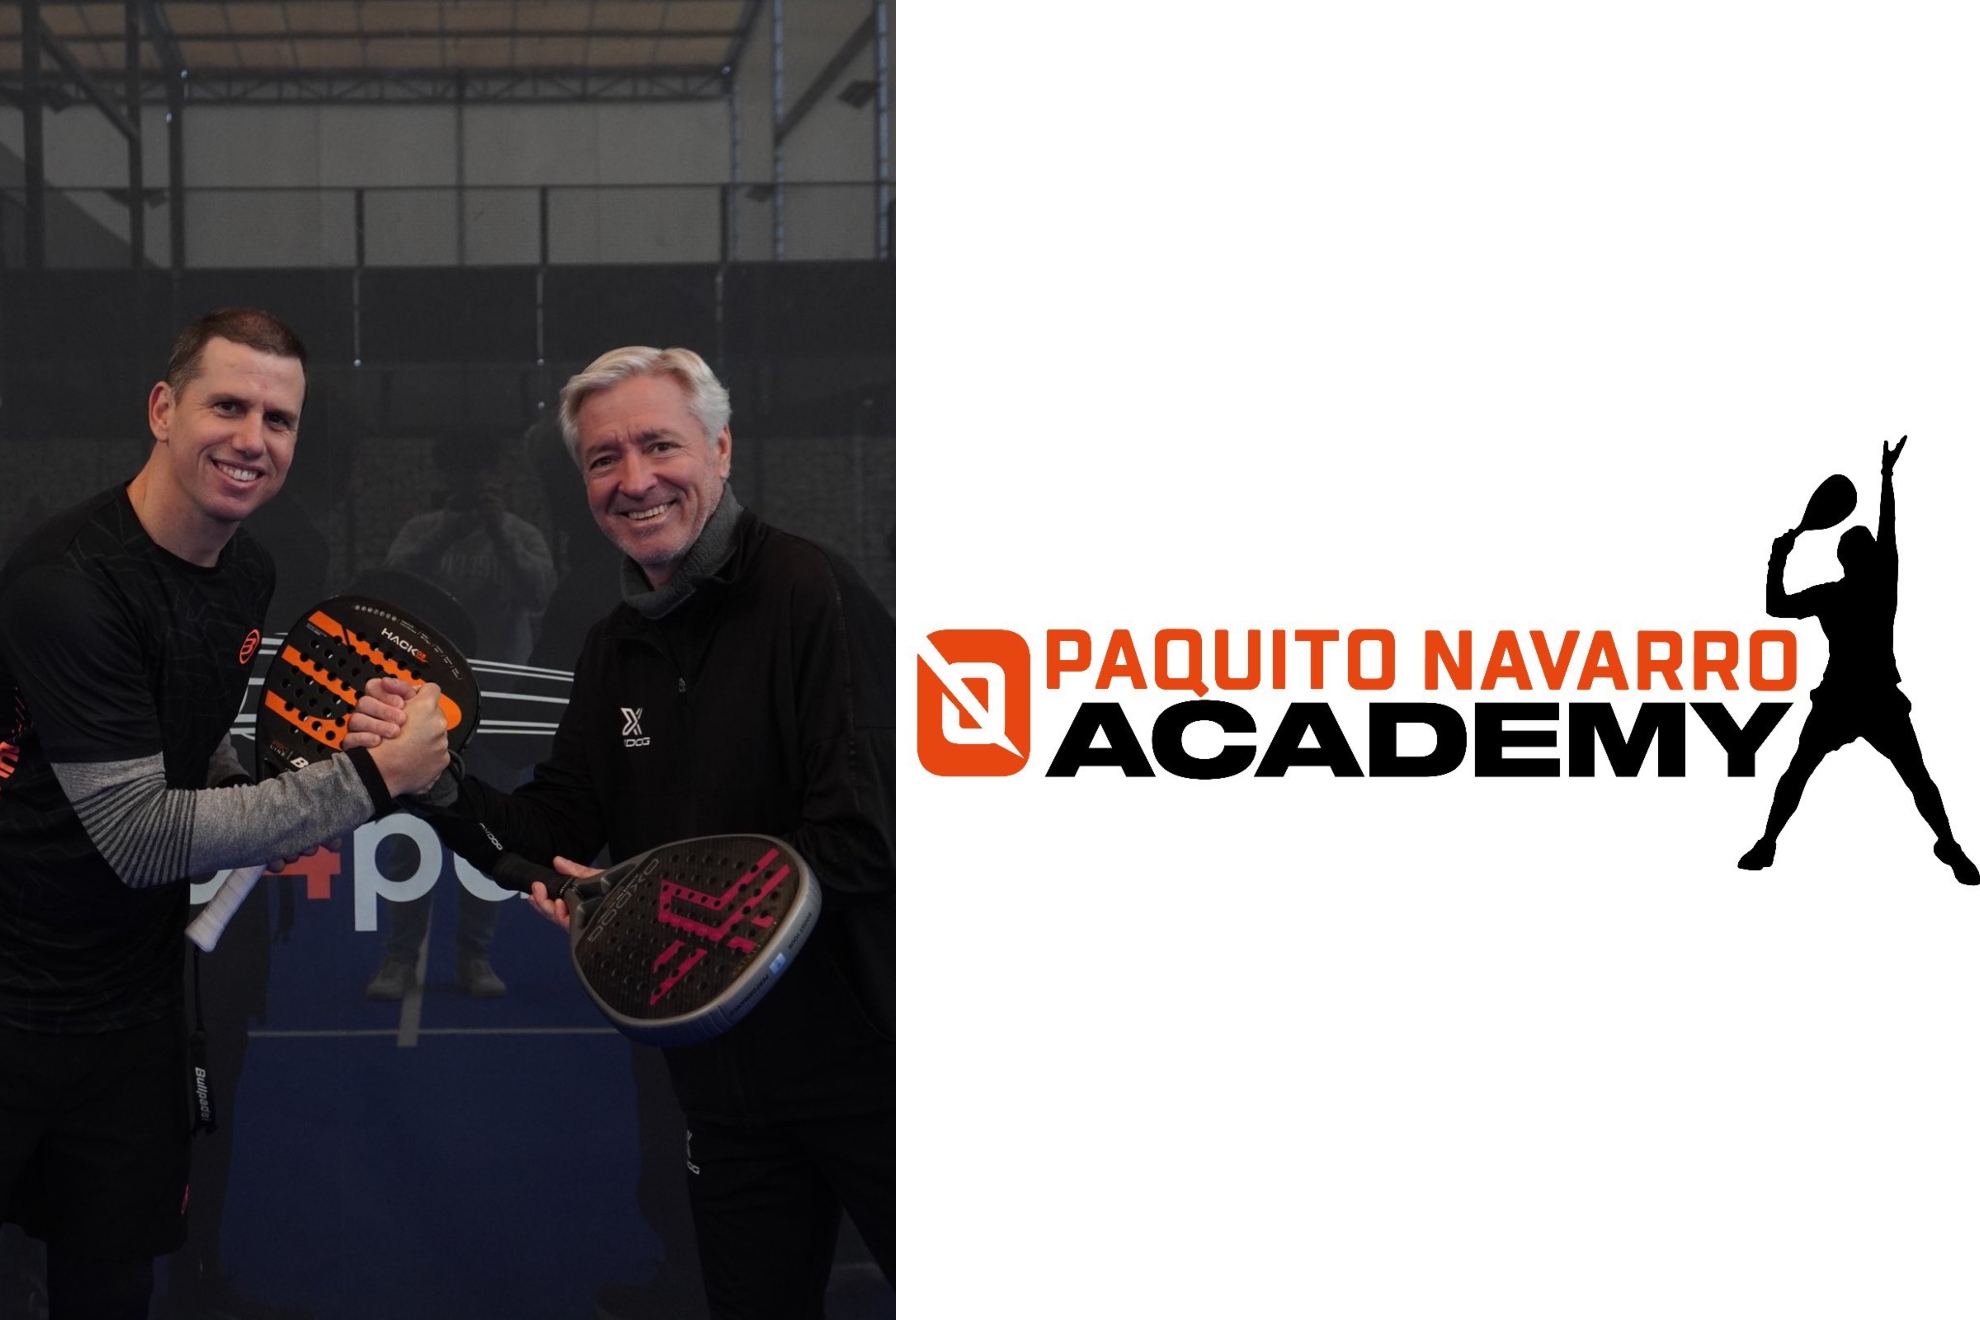 Paquito Navarro, Ramiro Choya y el logo de la academia.